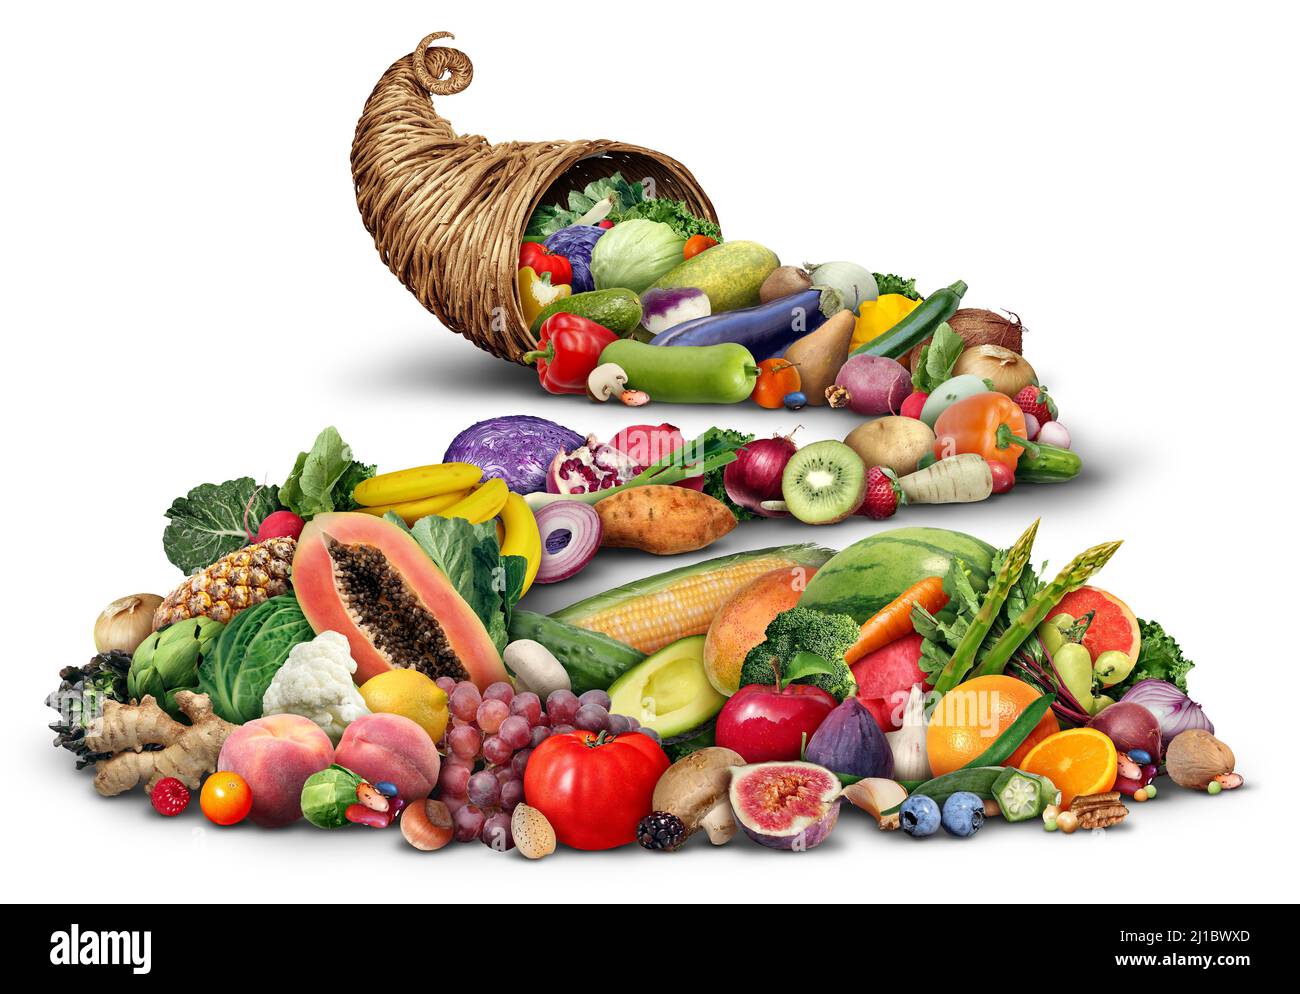 Cornucopia Horn Objekt voll von frischem Obst und Gemüse auf weißem Hintergrund als rustikale traditionelle Weide oder gewobenen Korb. Stockfoto